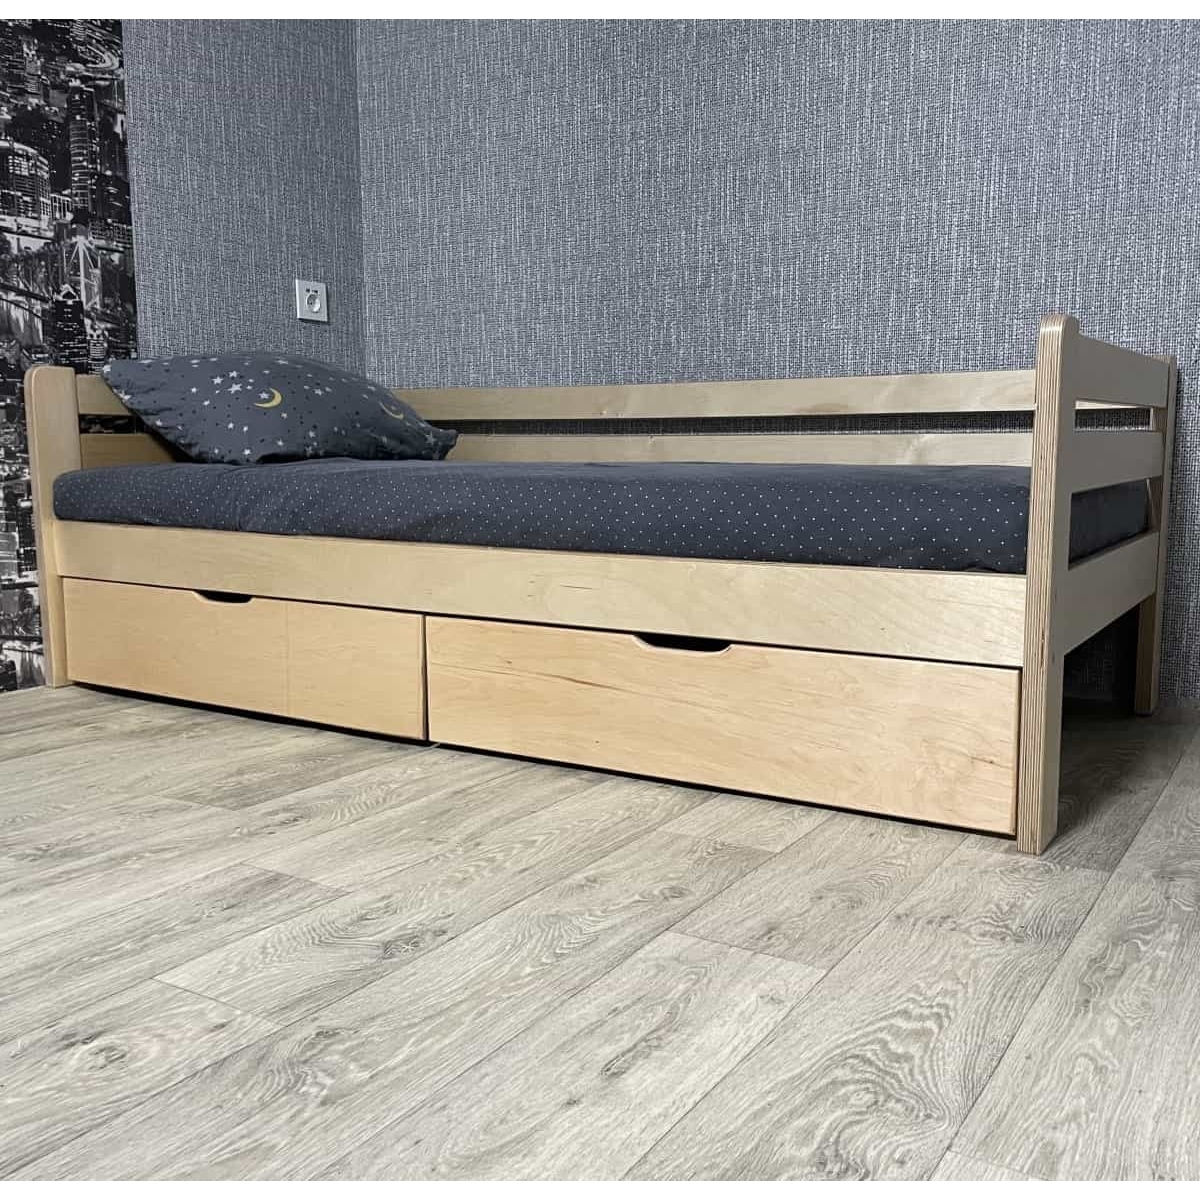 Кровать Ecodrev Классик с ящиками без бортика (лак)